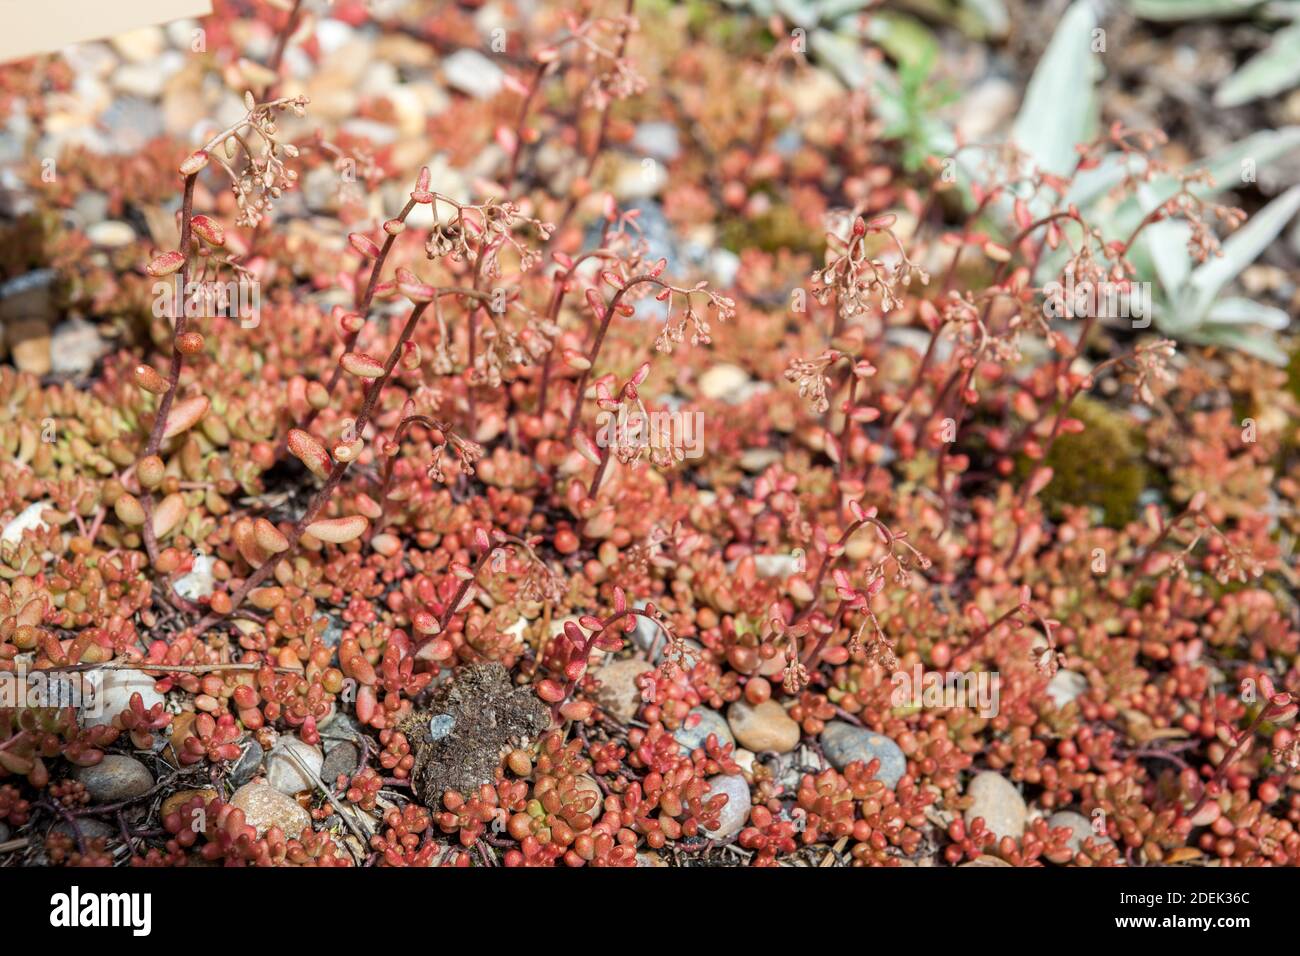 'Coral Carpet' White Stonecrop, Vit fetknopp (Sedum album) Stock Photo